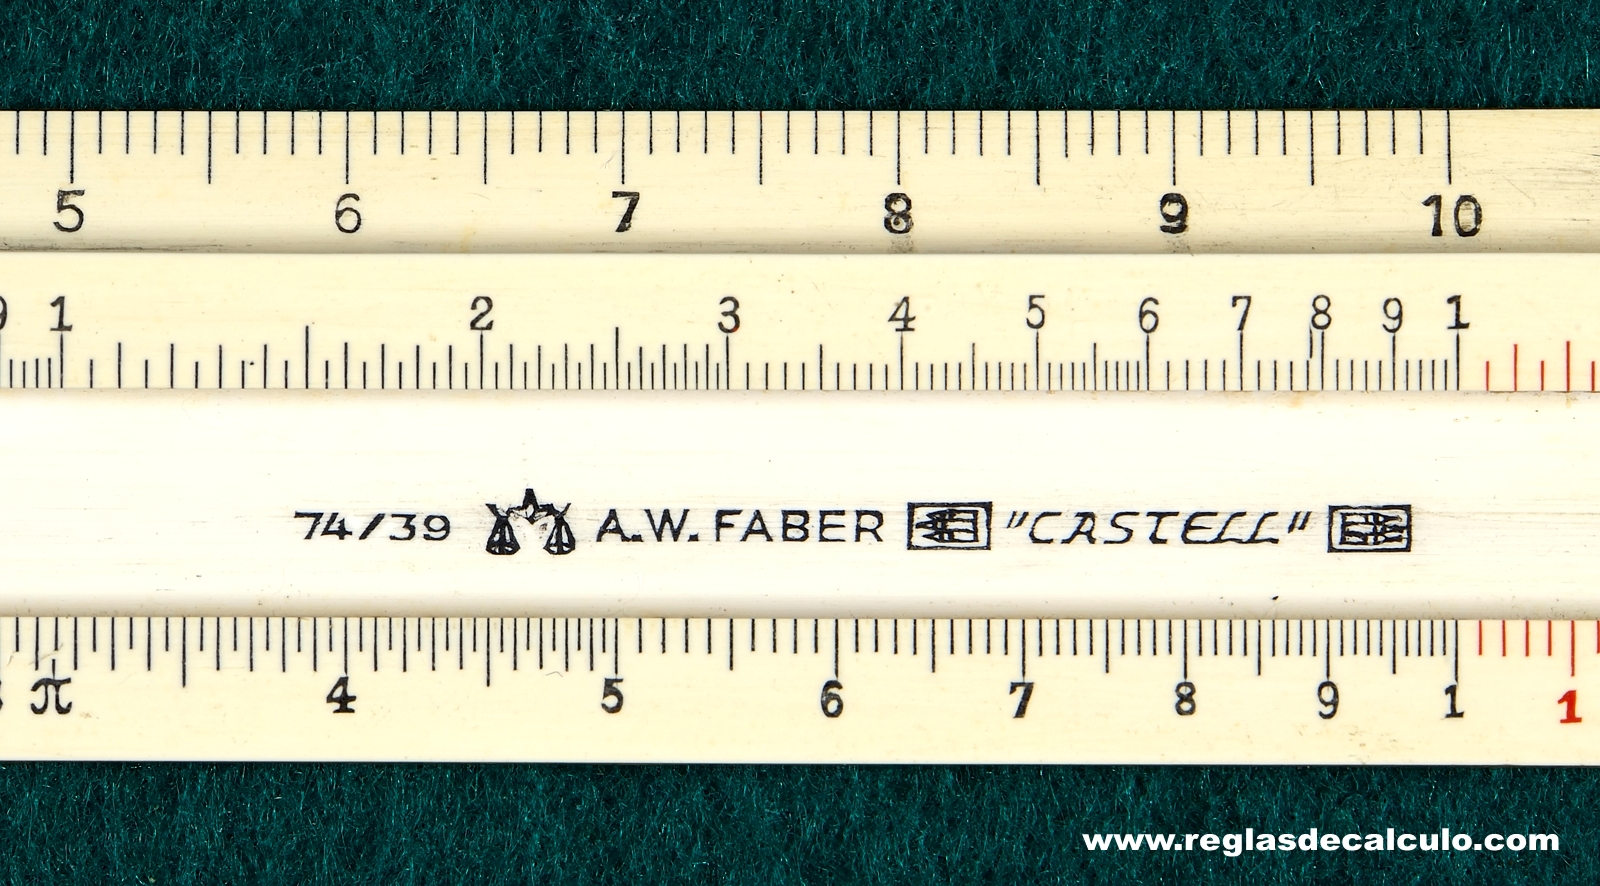 Faber Castell 74/39 Regla de Calculo Slide rule